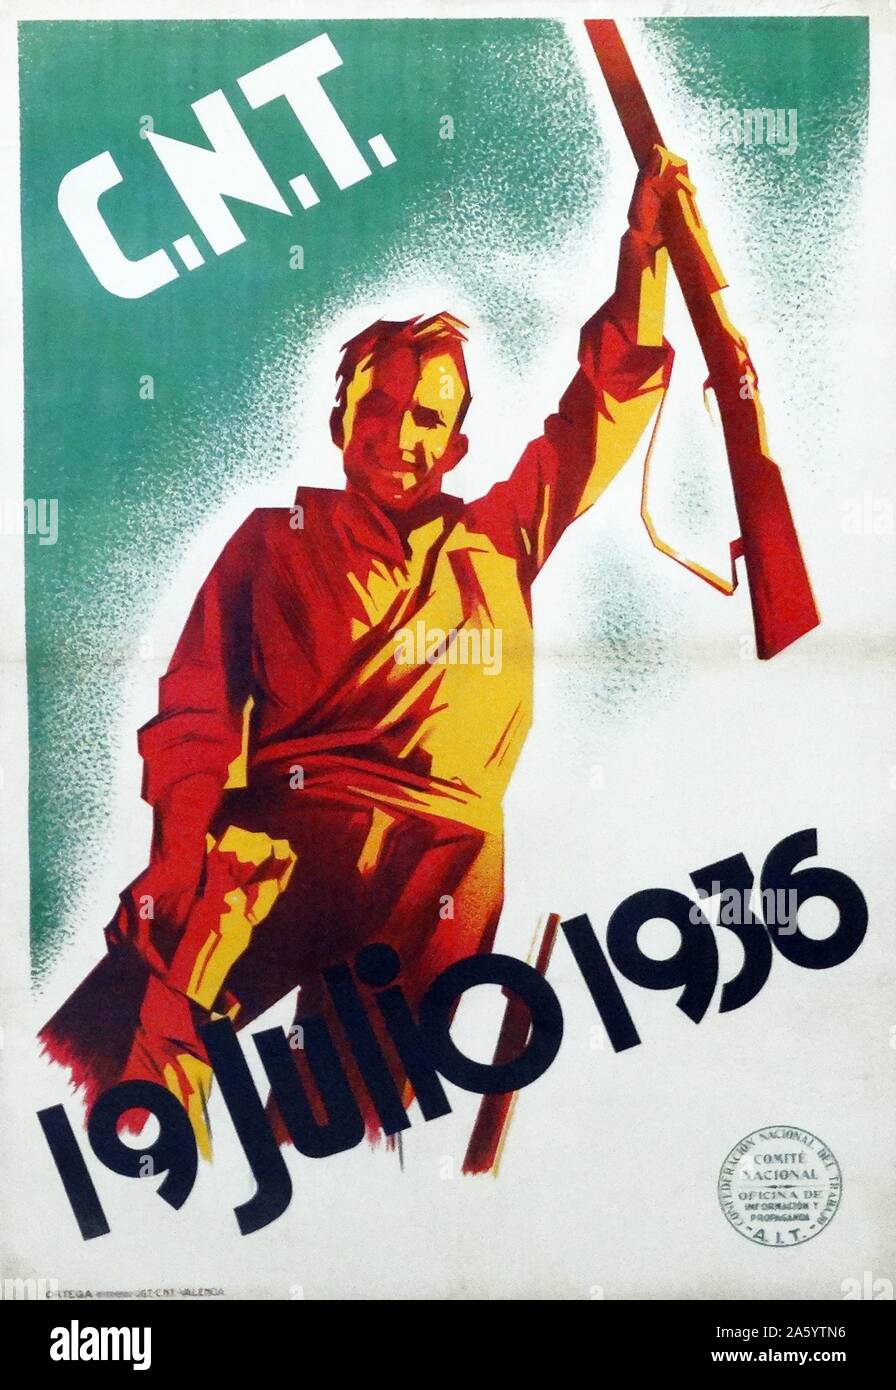 Affiches de propagande de la CNT anarchiste espagnol, pendant la guerre civile espagnole. Banque D'Images